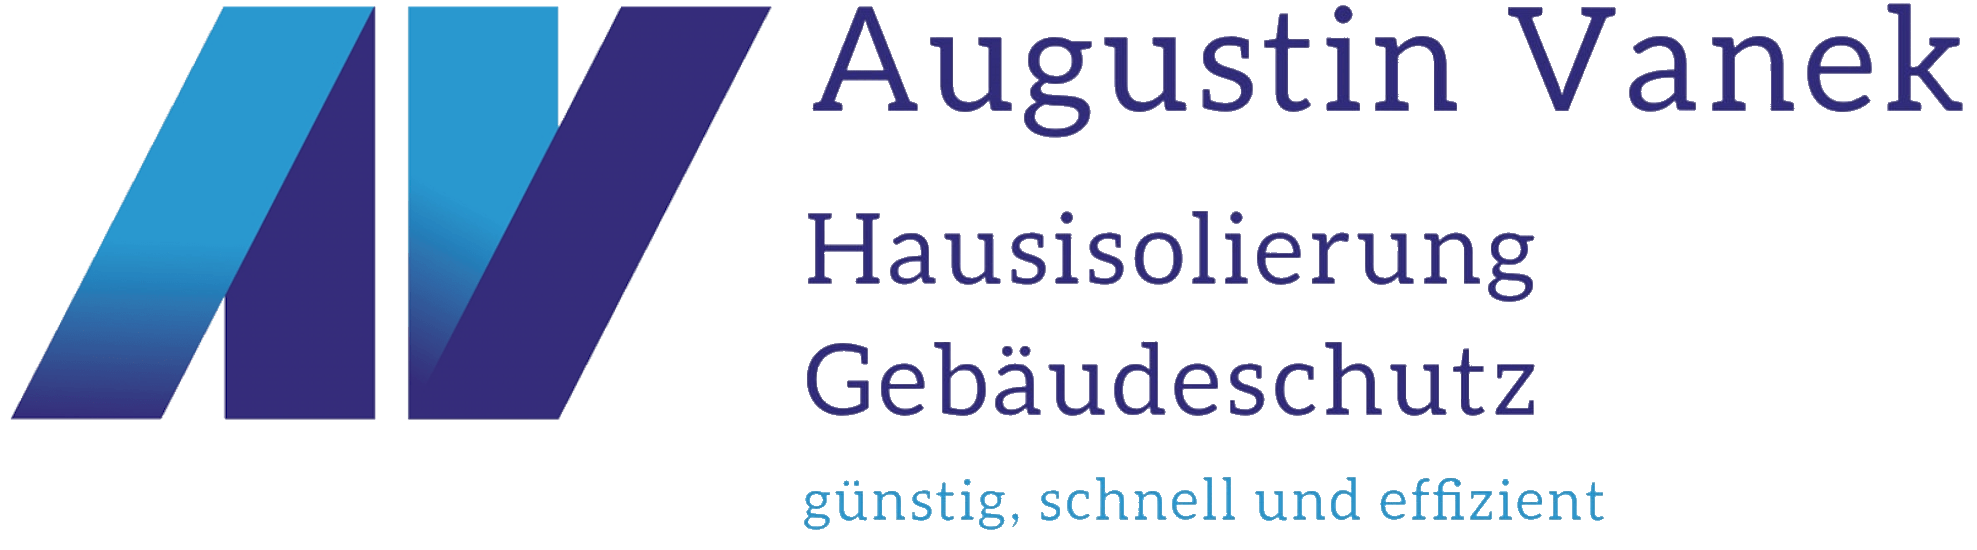 Augustin Vanek Hausisolierung – Gebäudeschutz